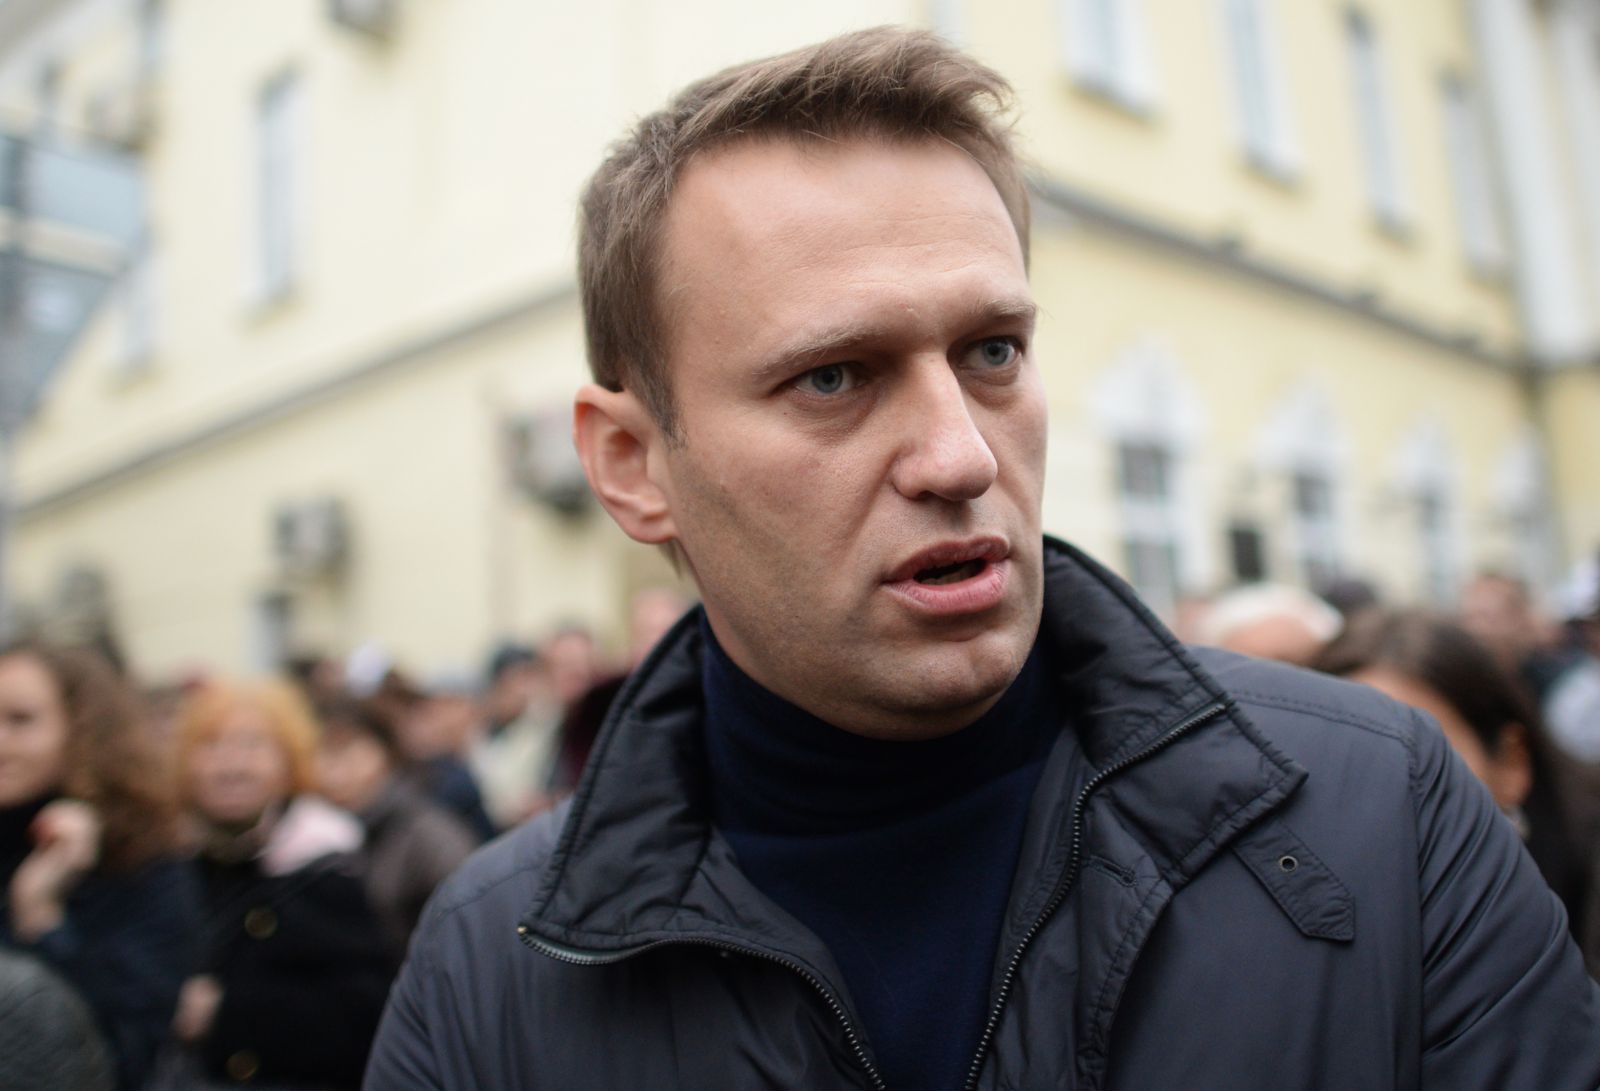 "Старик Путин не хочет, чтобы я попал на митинг в Нижнем Новгороде", - Навального задержали в подъезде дома. Подробности